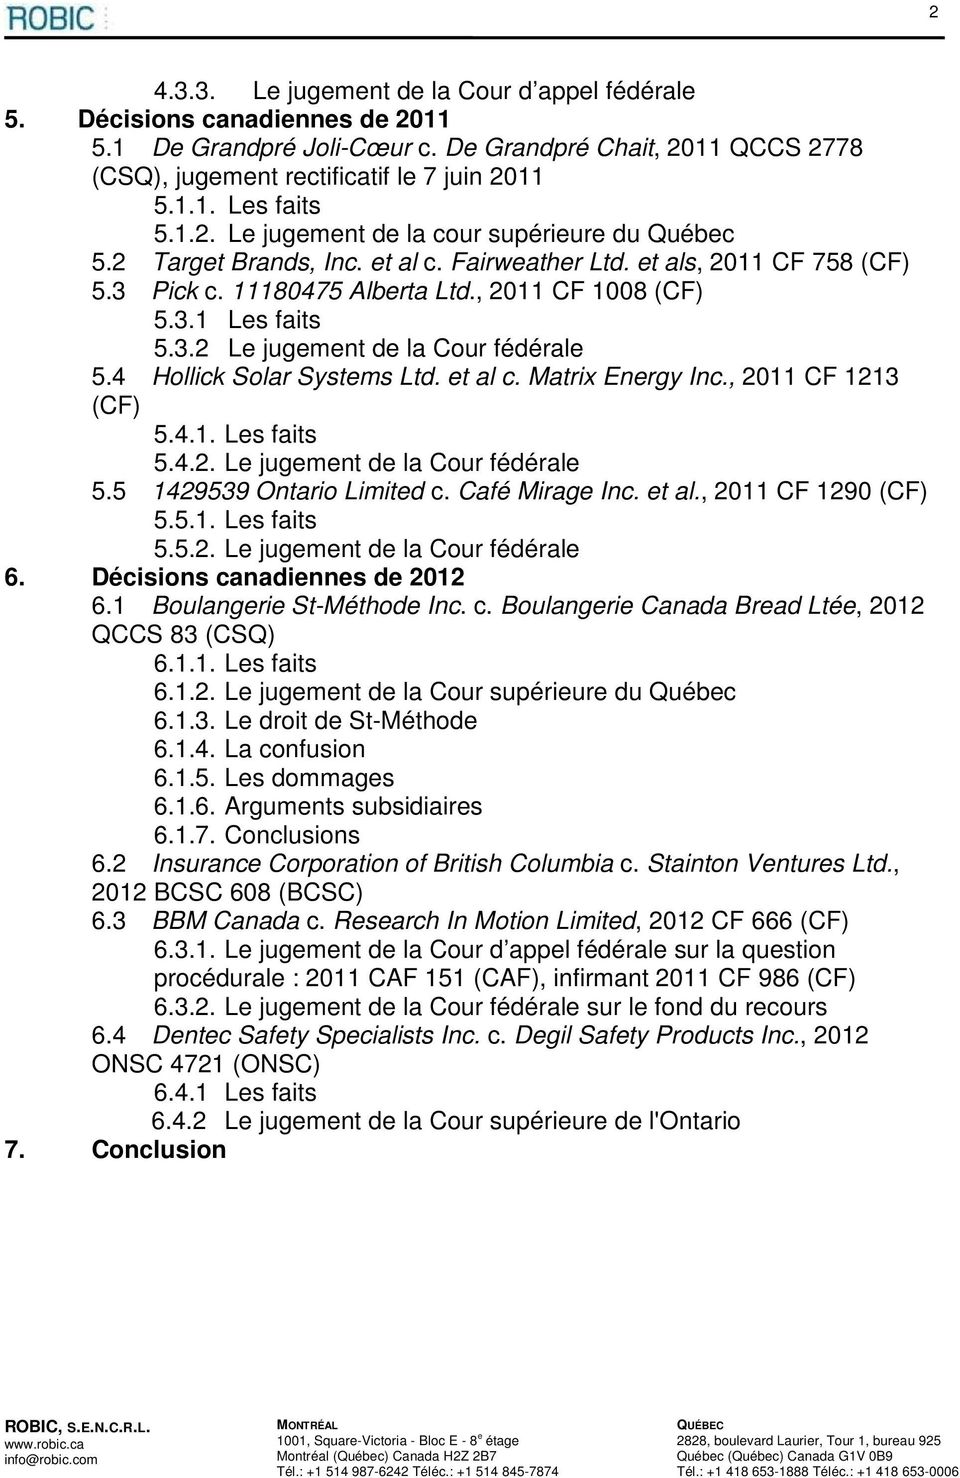 4 Hollick Solar Systems Ltd. et al c. Matrix Energy Inc., 2011 CF 1213 (CF) 5.4.1. Les faits 5.4.2. Le jugement de la Cour fédérale 5.5 1429539 Ontario Limited c. Café Mirage Inc. et al., 2011 CF 1290 (CF) 5.